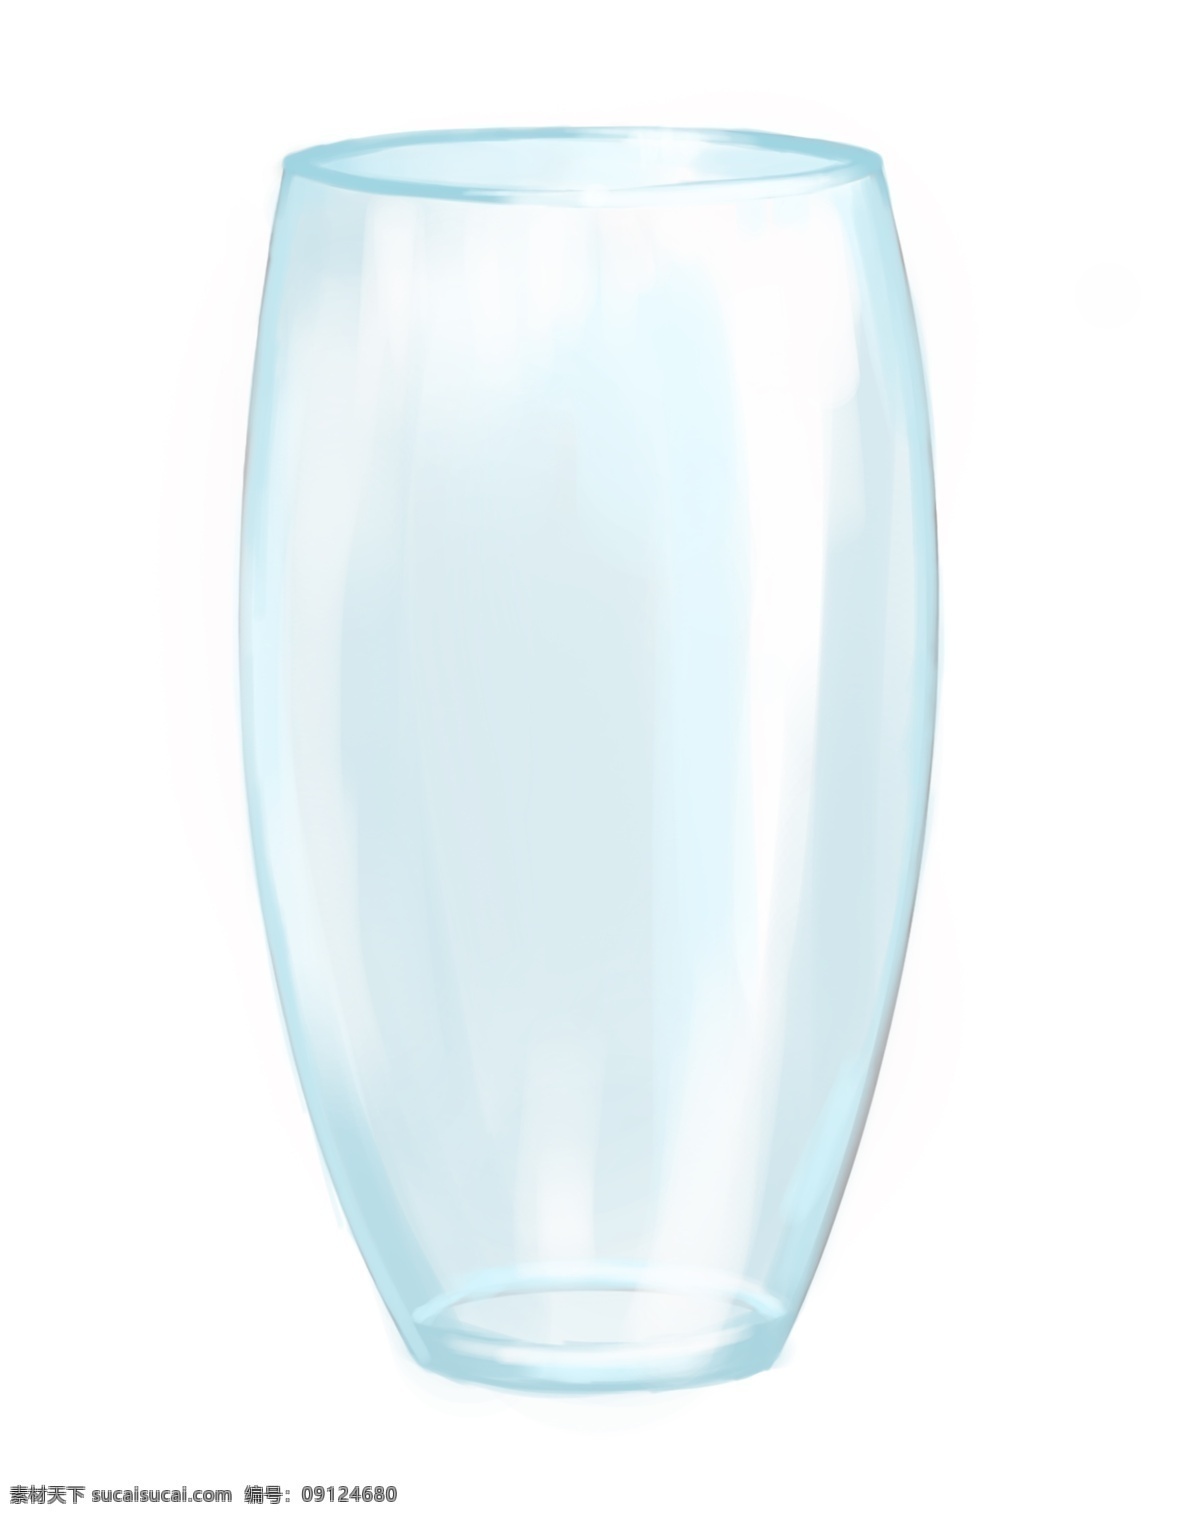 蓝色 玻璃 瓶子 插画 瓶子容器 蓝色瓶子 玻璃瓶子 蓝色玻璃瓶子 蓝色玻璃容器 容器插画